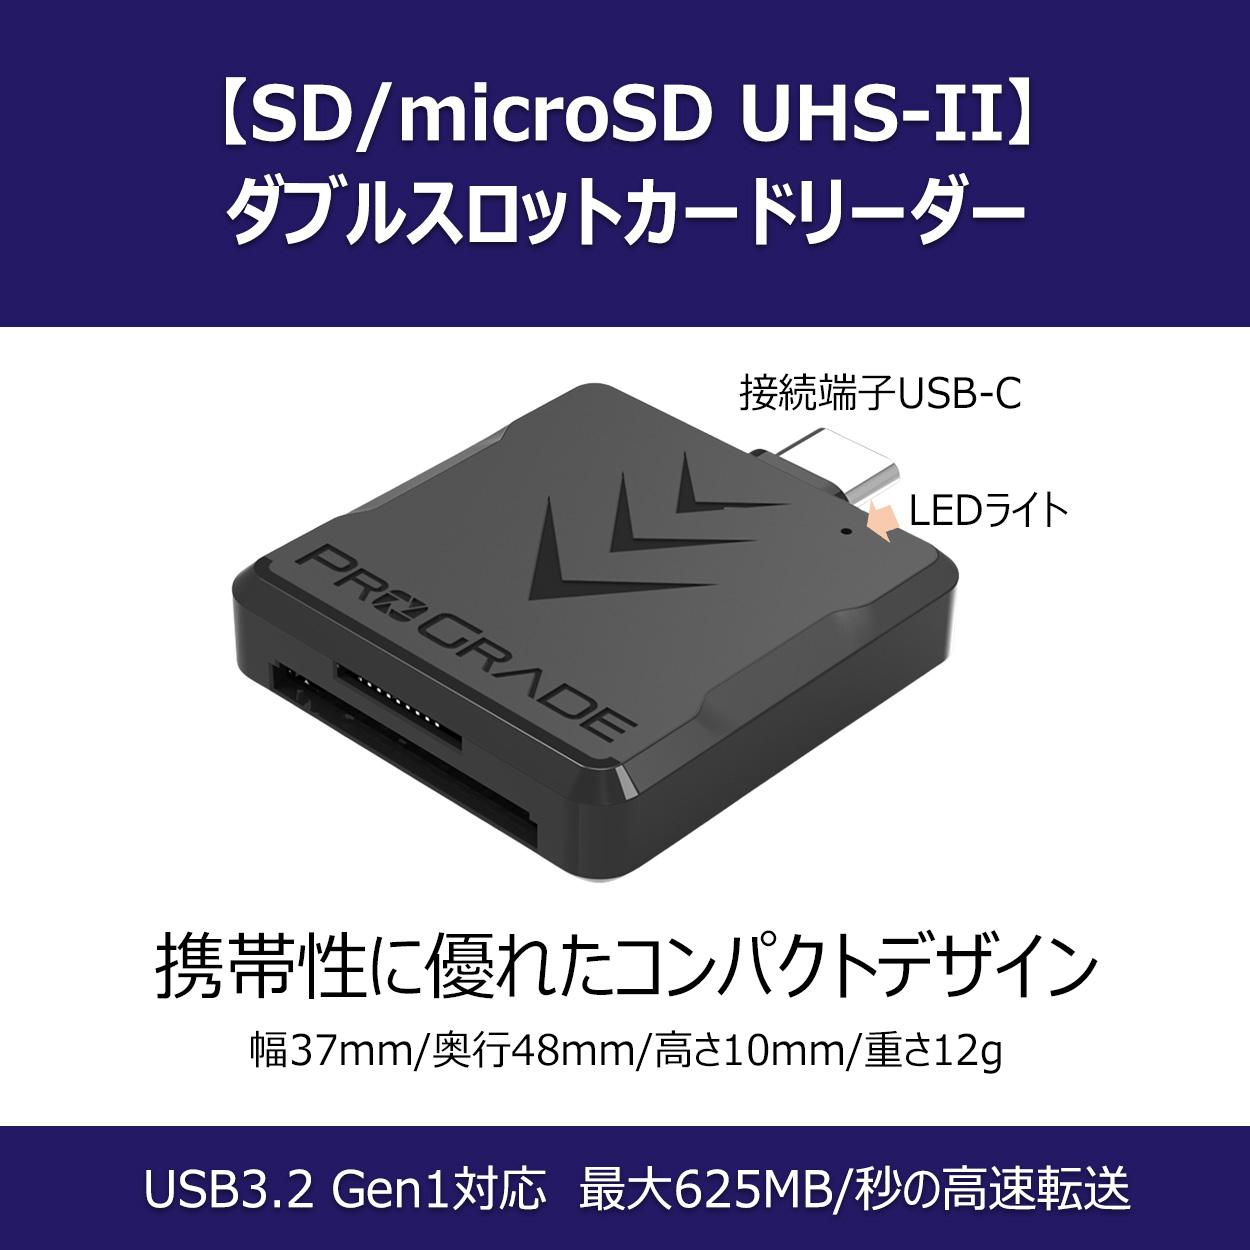 プログレードデジタル、UHS-II対応SD/microSDダブルスロットカード